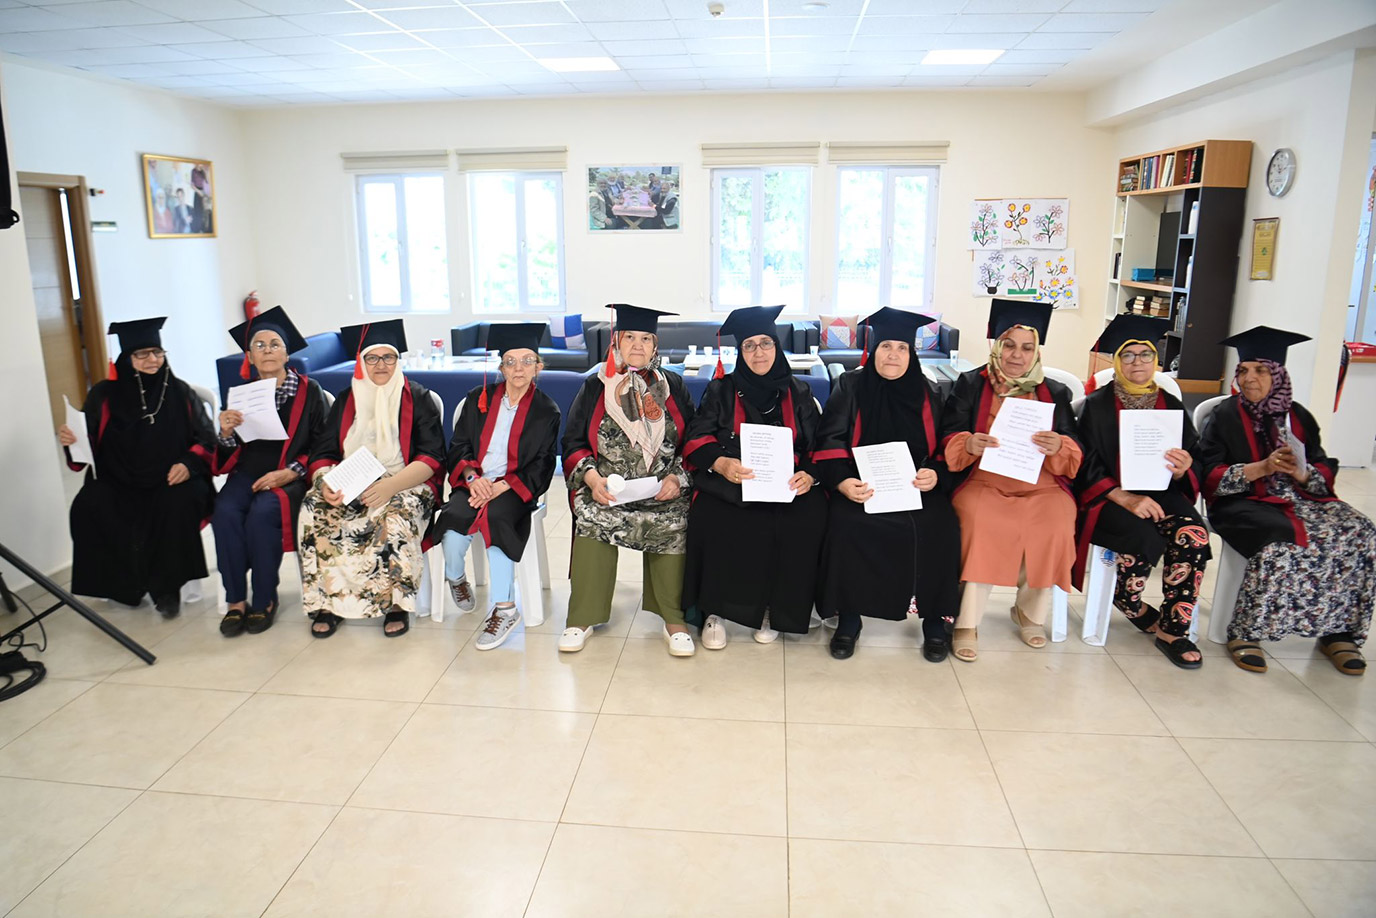 Tuzla Belediyesi Yaşlılar Merkezi’ne giden 65 yaş üstü 10 Tuzlalı vatandaş, haftada 2 gün katıldıkları okuma yazma kursunu başarı ile tamamladılar.